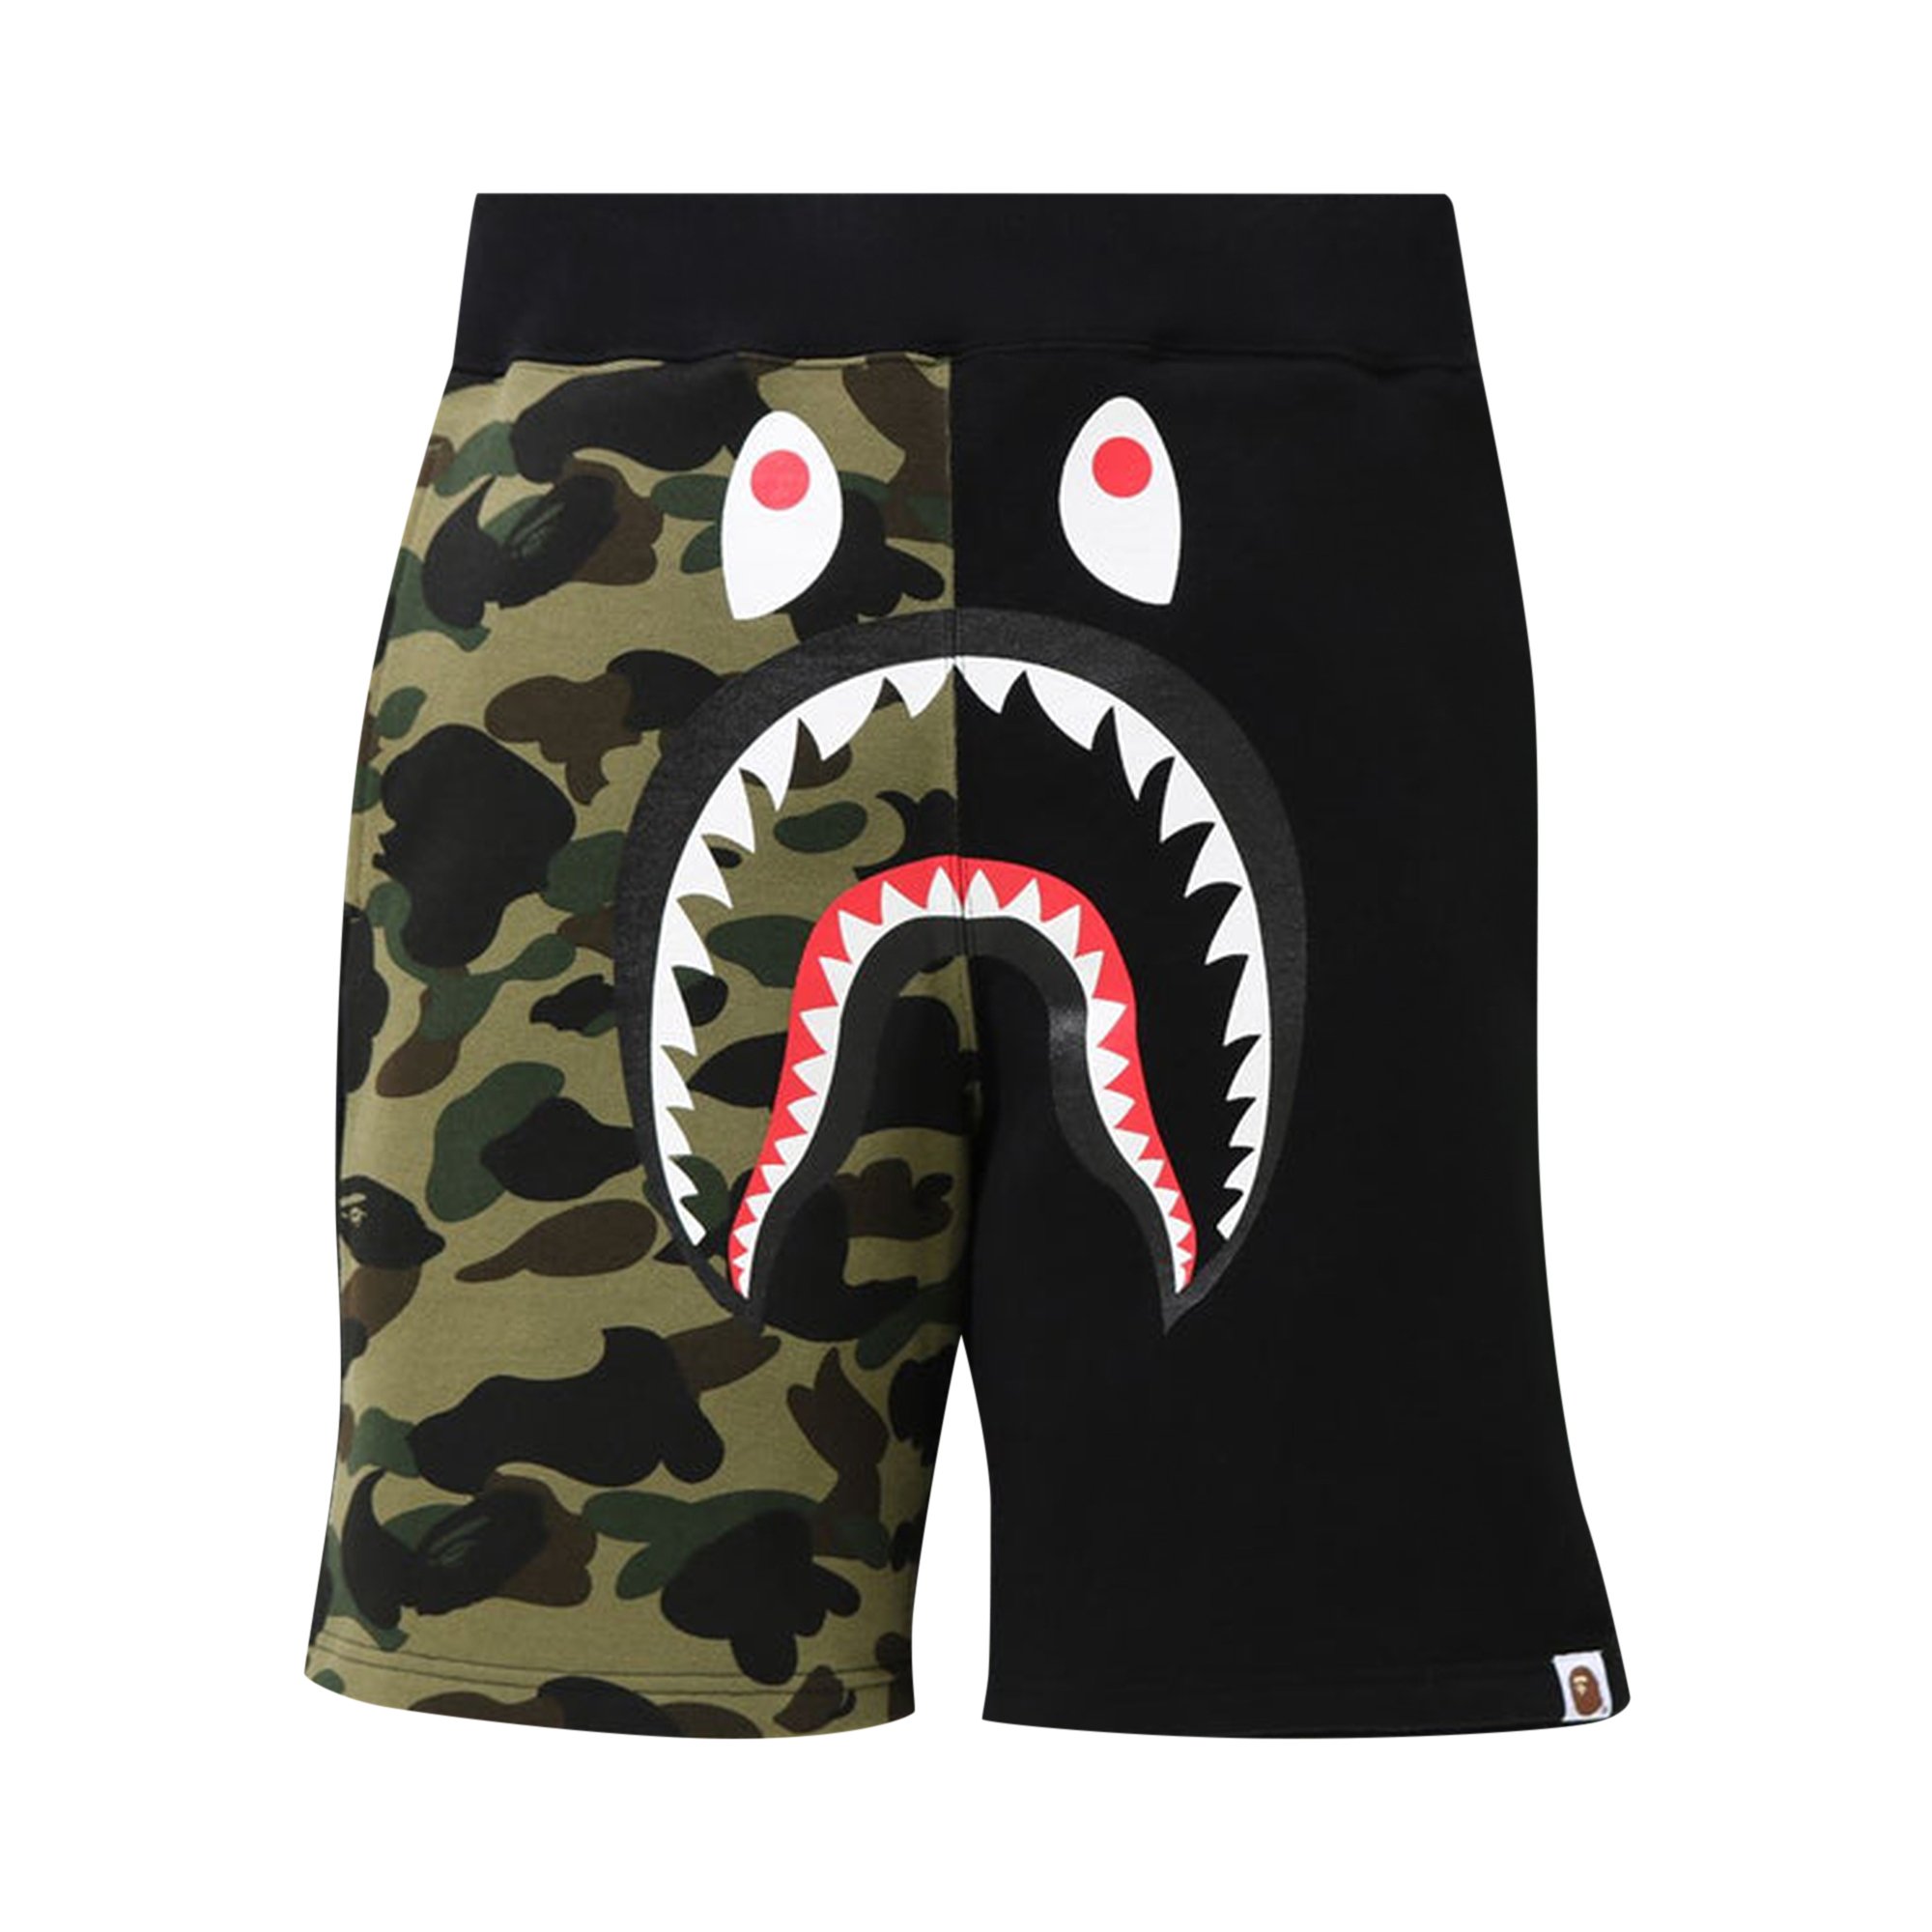 BAPE Shark Спортивные шорты, черные